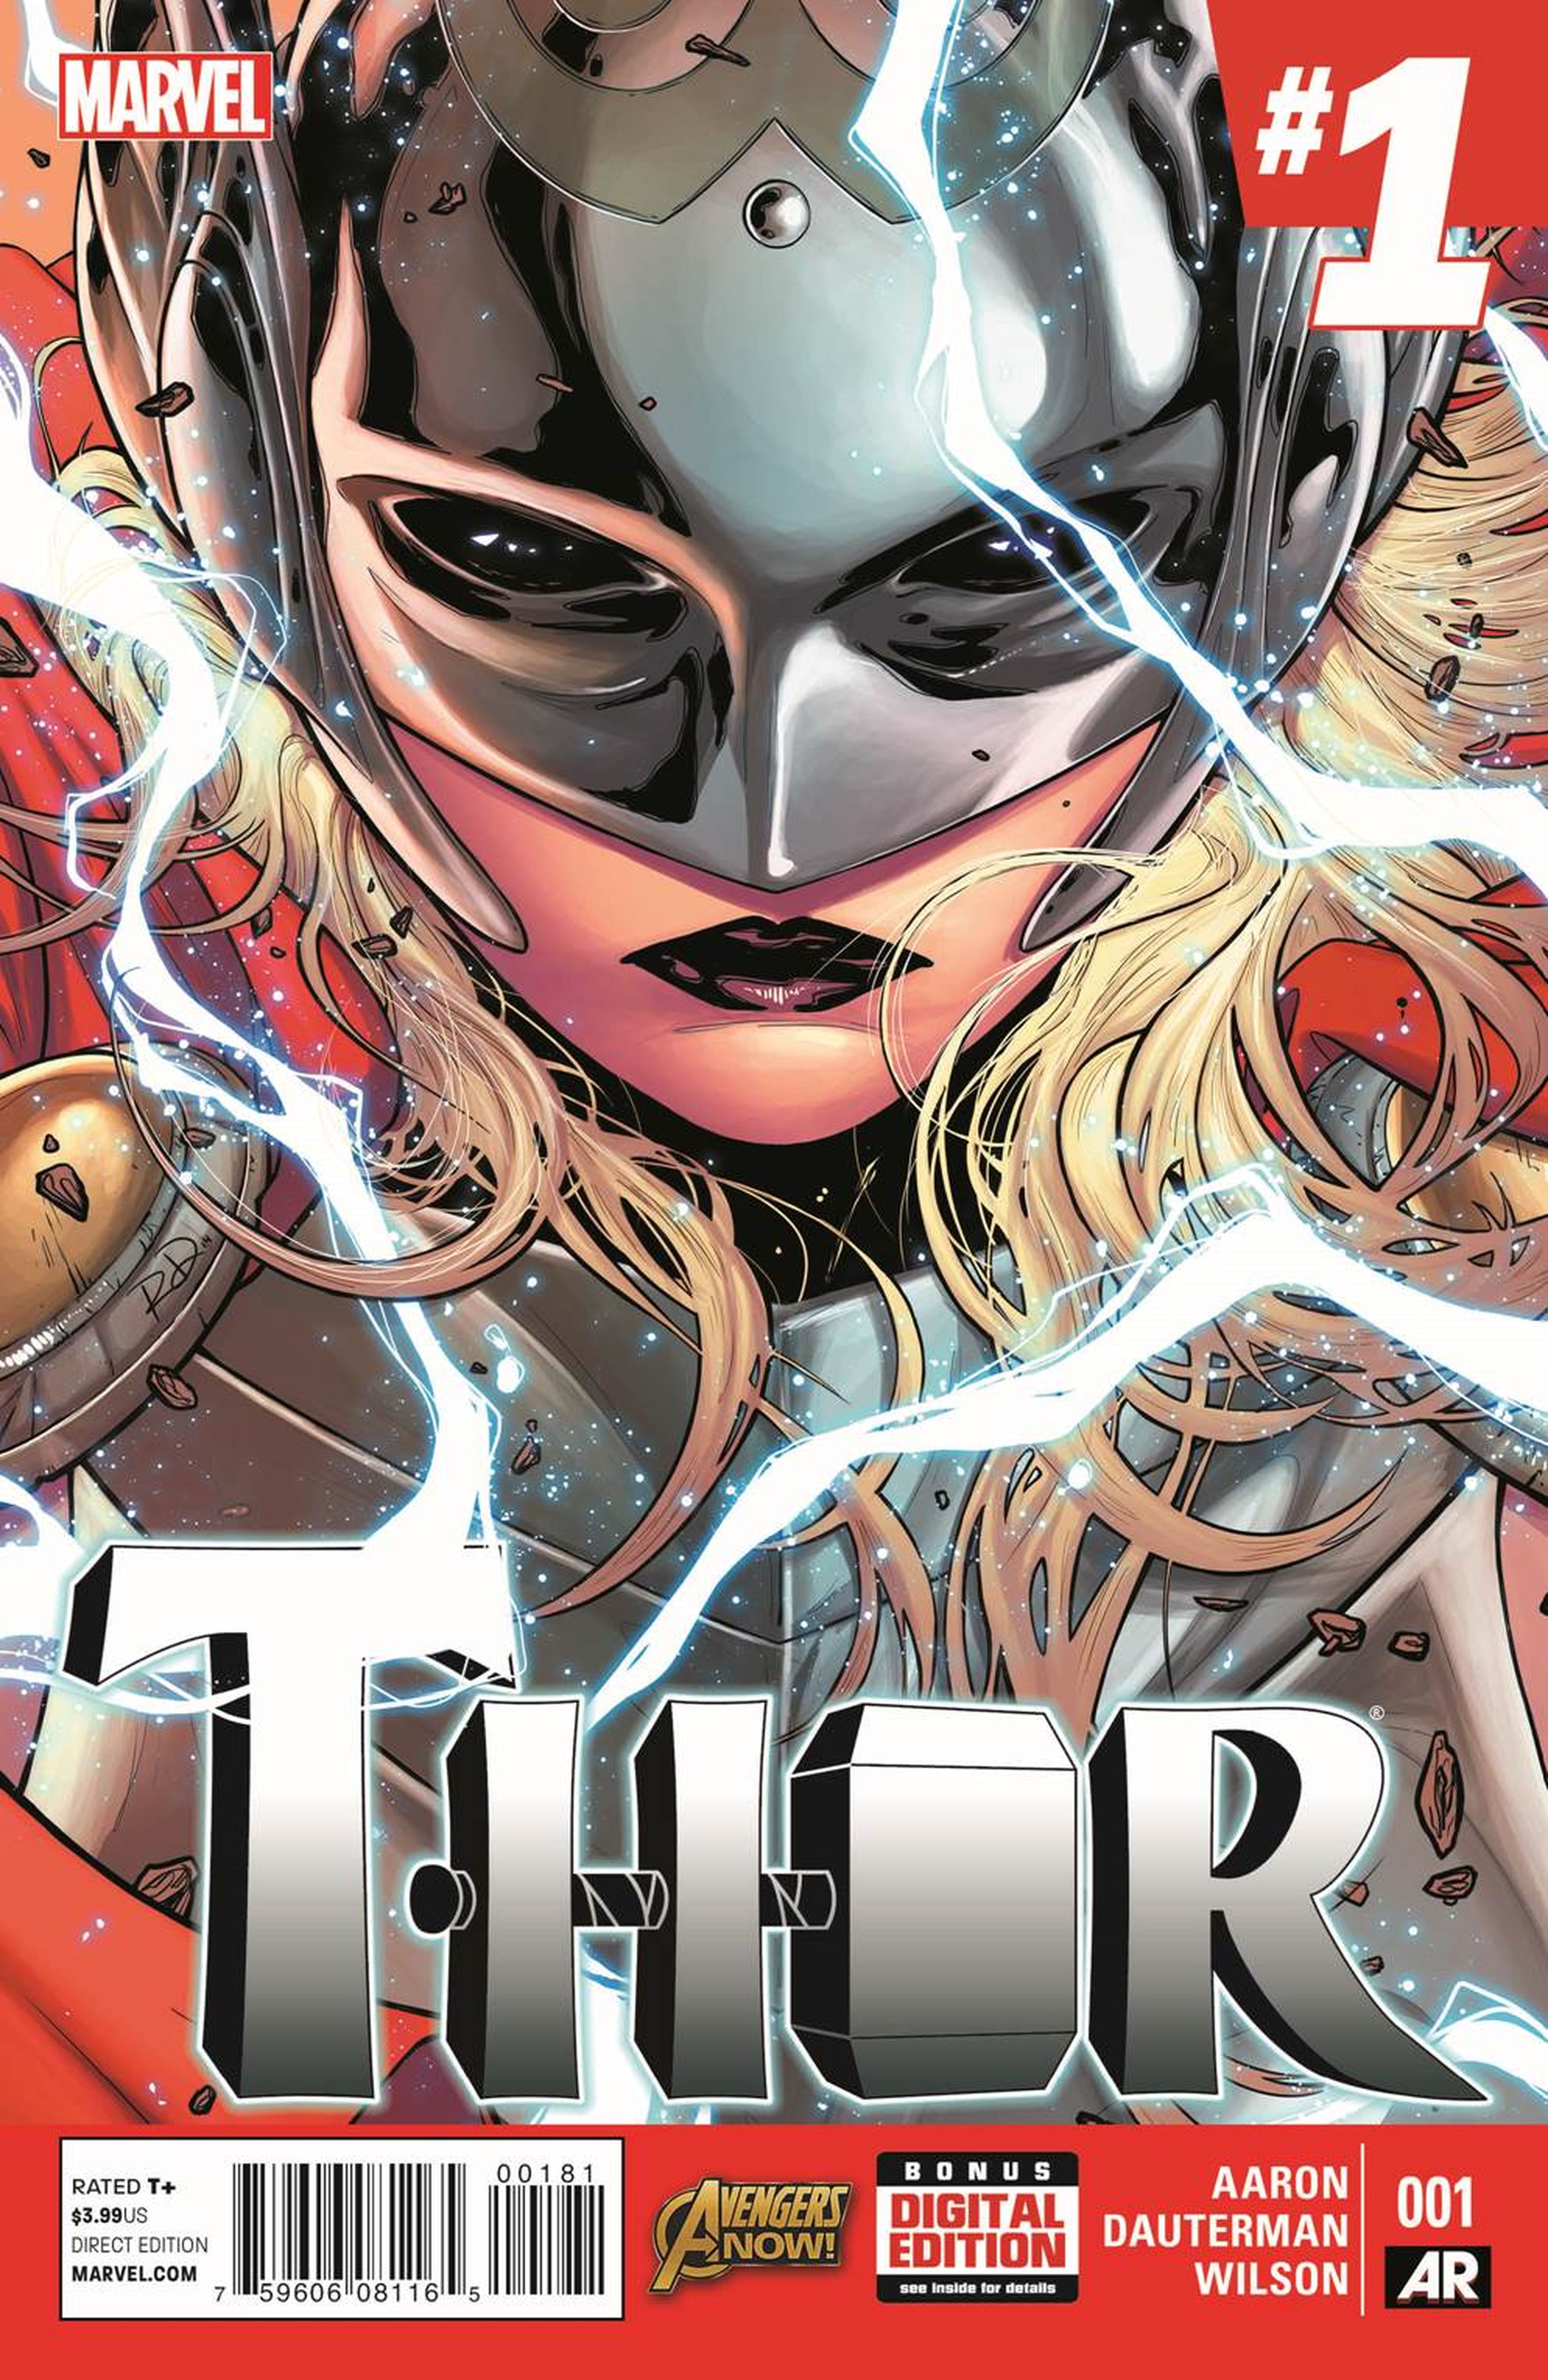 Adelanto de la nueva serie de la Thor mujer